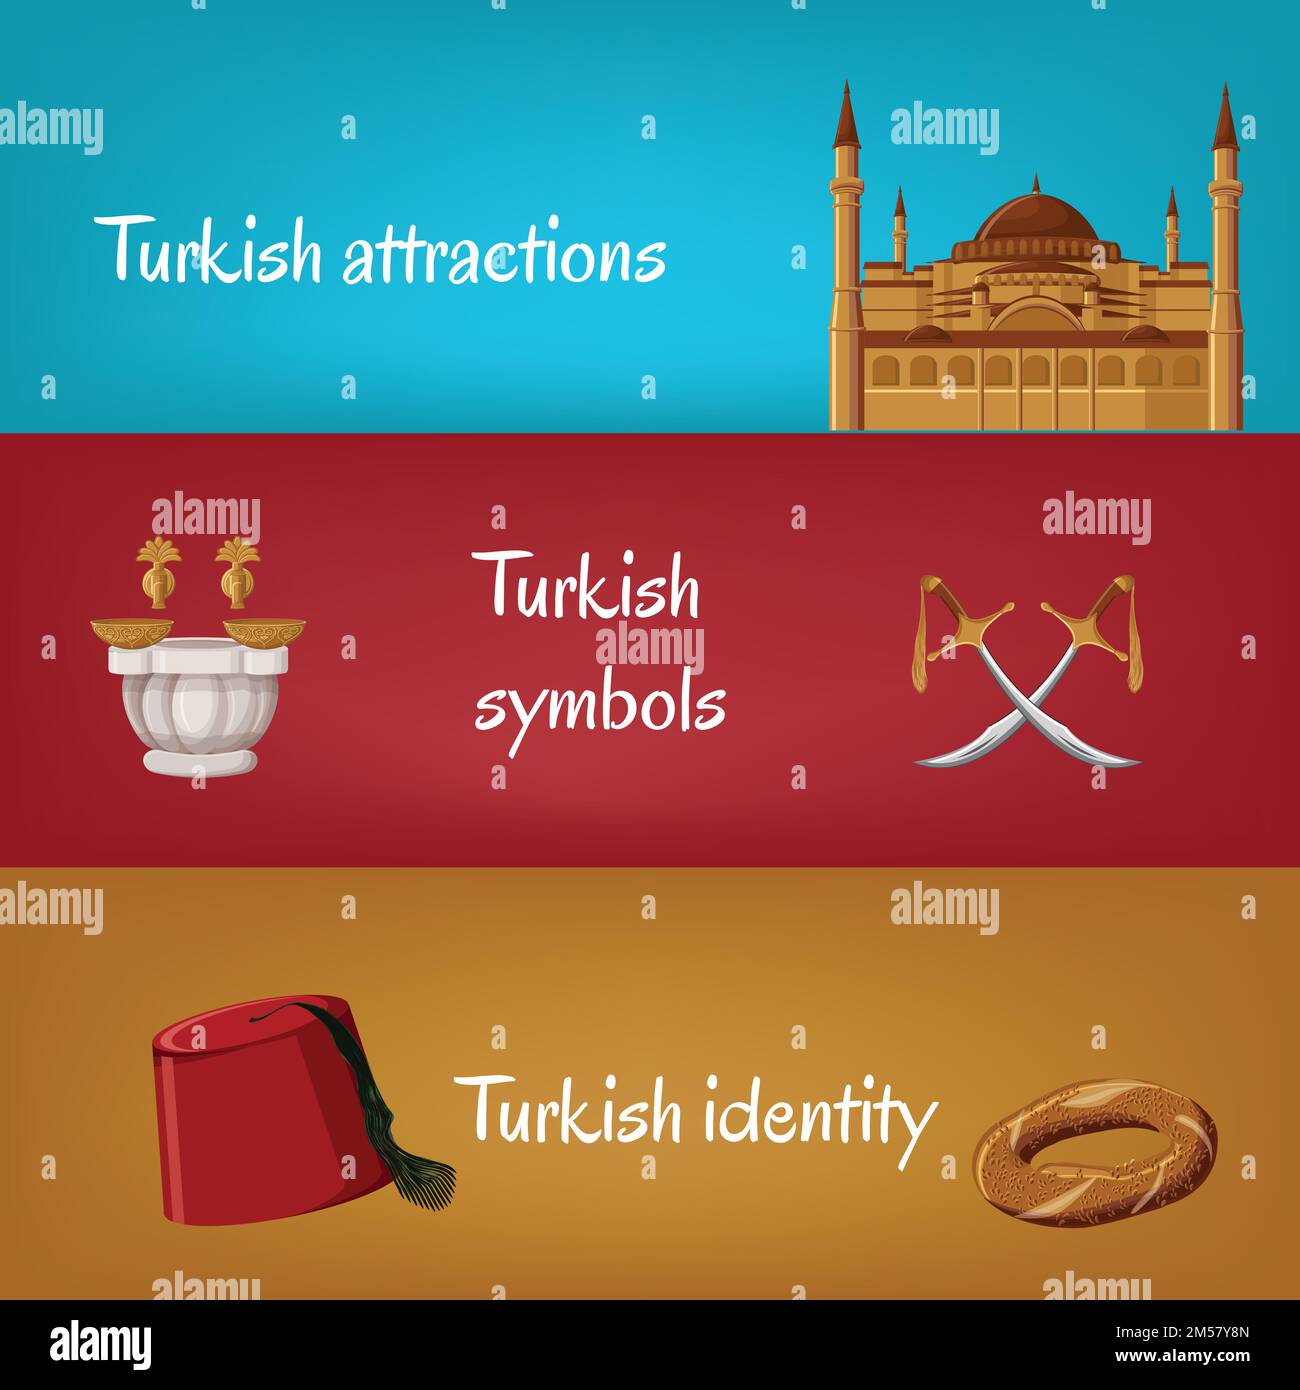 Türkische touristische Banner mit traditionellen Symbolen fez, Simit, Schwerter, Hamam, Hagia Sophia. Türkische Attraktionen, Symbole, Identität. Reise in die Türkei Stock Vektor